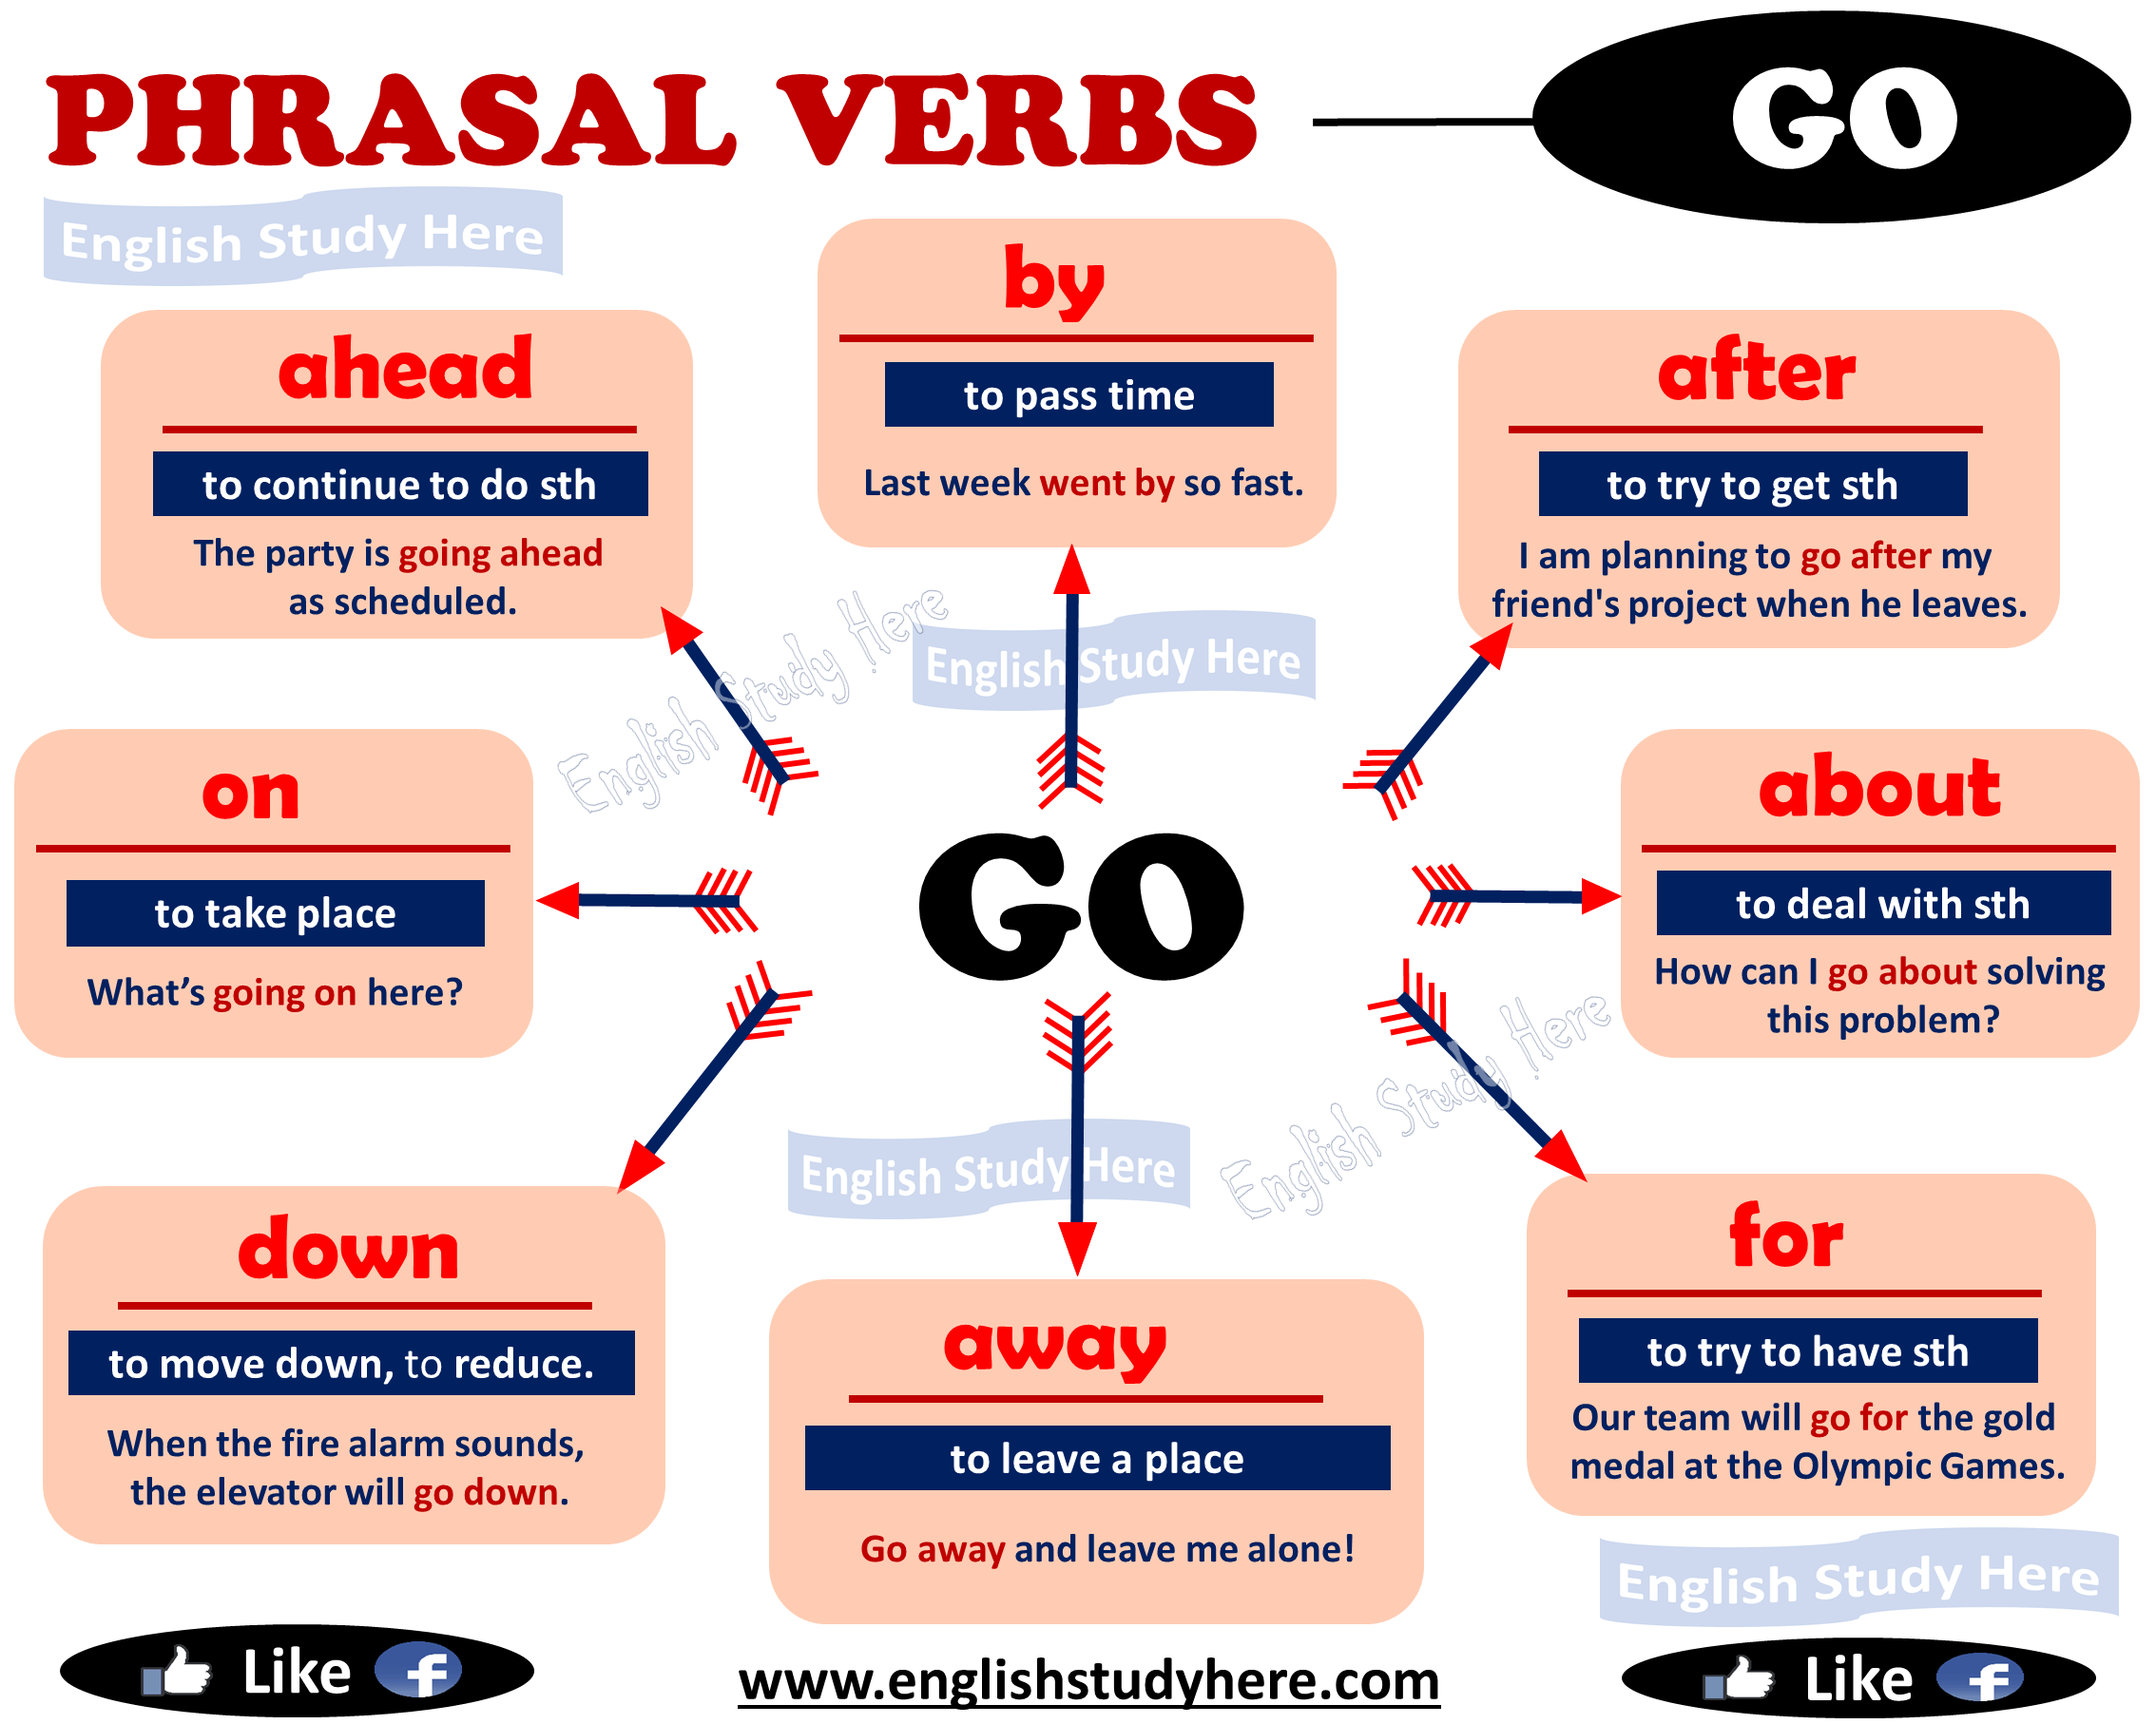 Go out away. Phrasal verbs go 8 класс. Фразовые глаголы в английском языке go. Go for Фразовый глагол. Предложения с фразовым глаголом go.